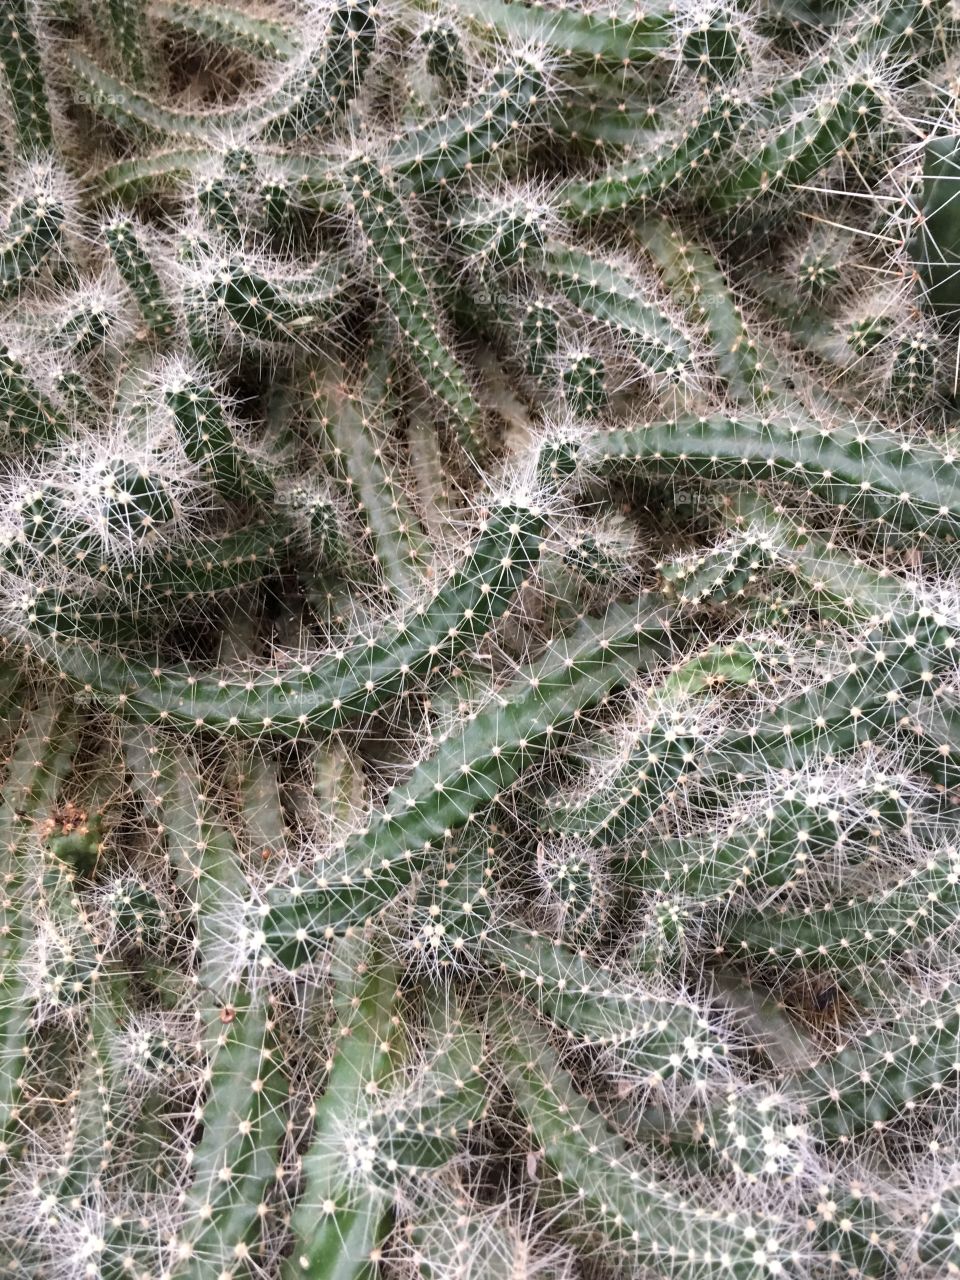 Cactus invasion